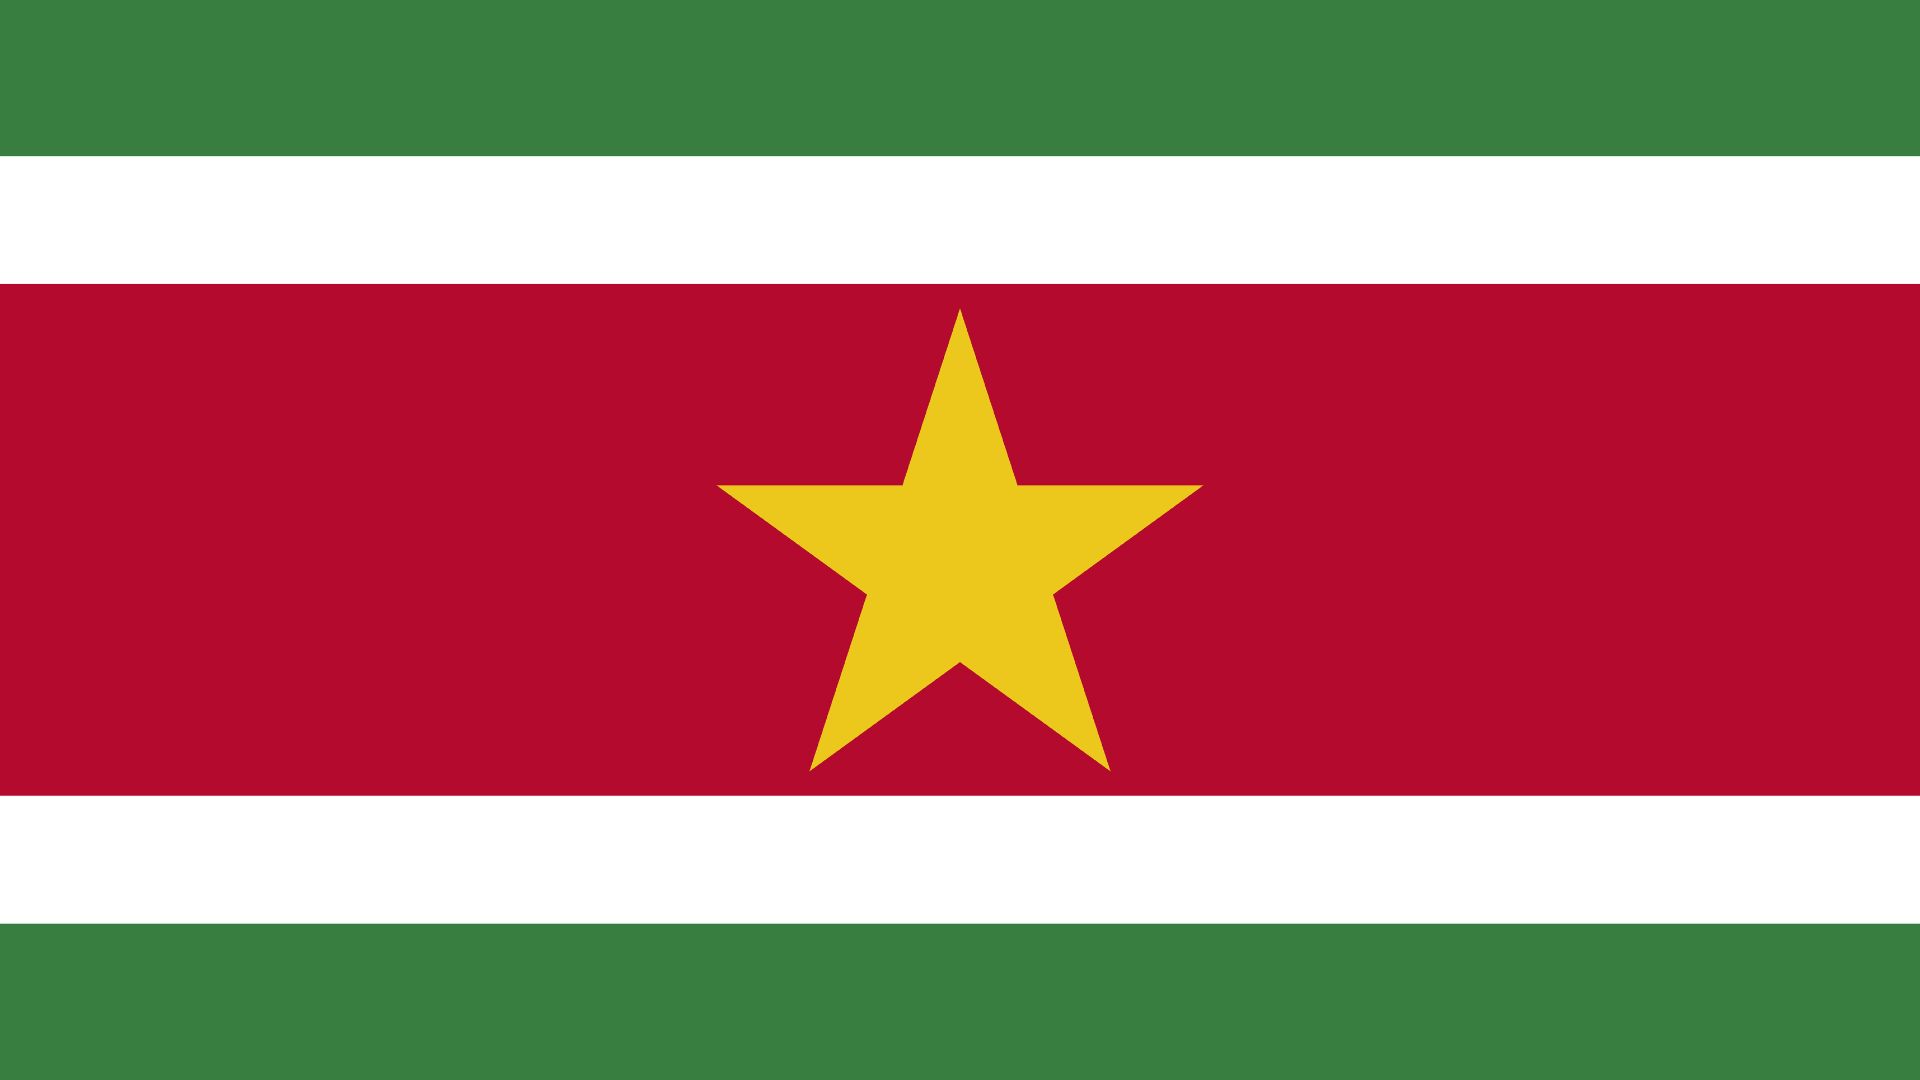 A bandeira do Suriname é formada por cinco listras horizontais de cores: verde, branco, vermelho, branco e verde. Ela conta também com uma estrela dourada de cinco pontas localizada no centro da bandeira.